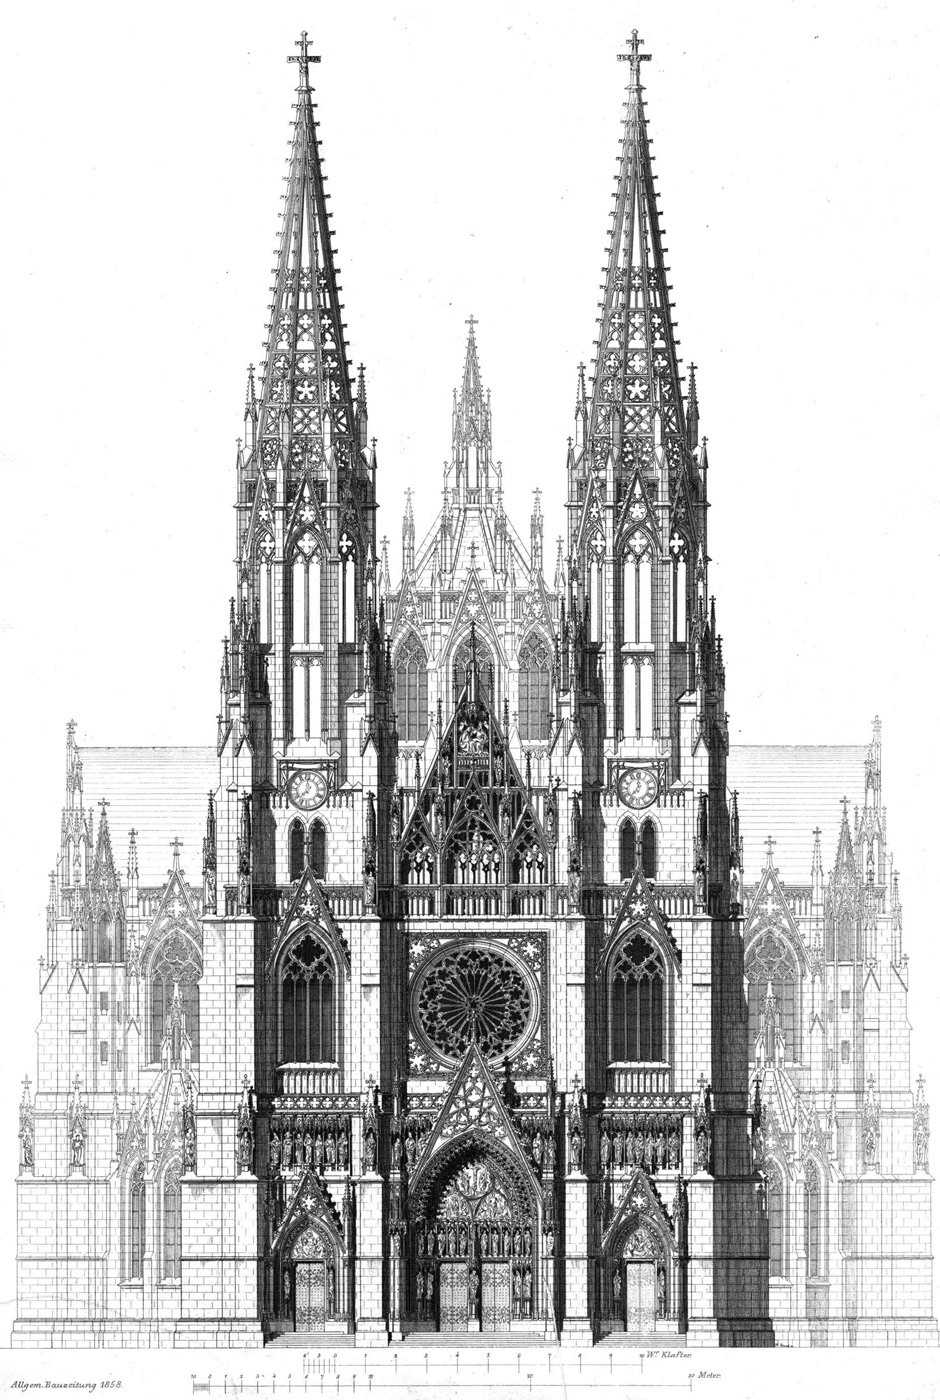 Archivbild 1: Hauptfassade der Votivkirche in Wien (Bauzeichnung)